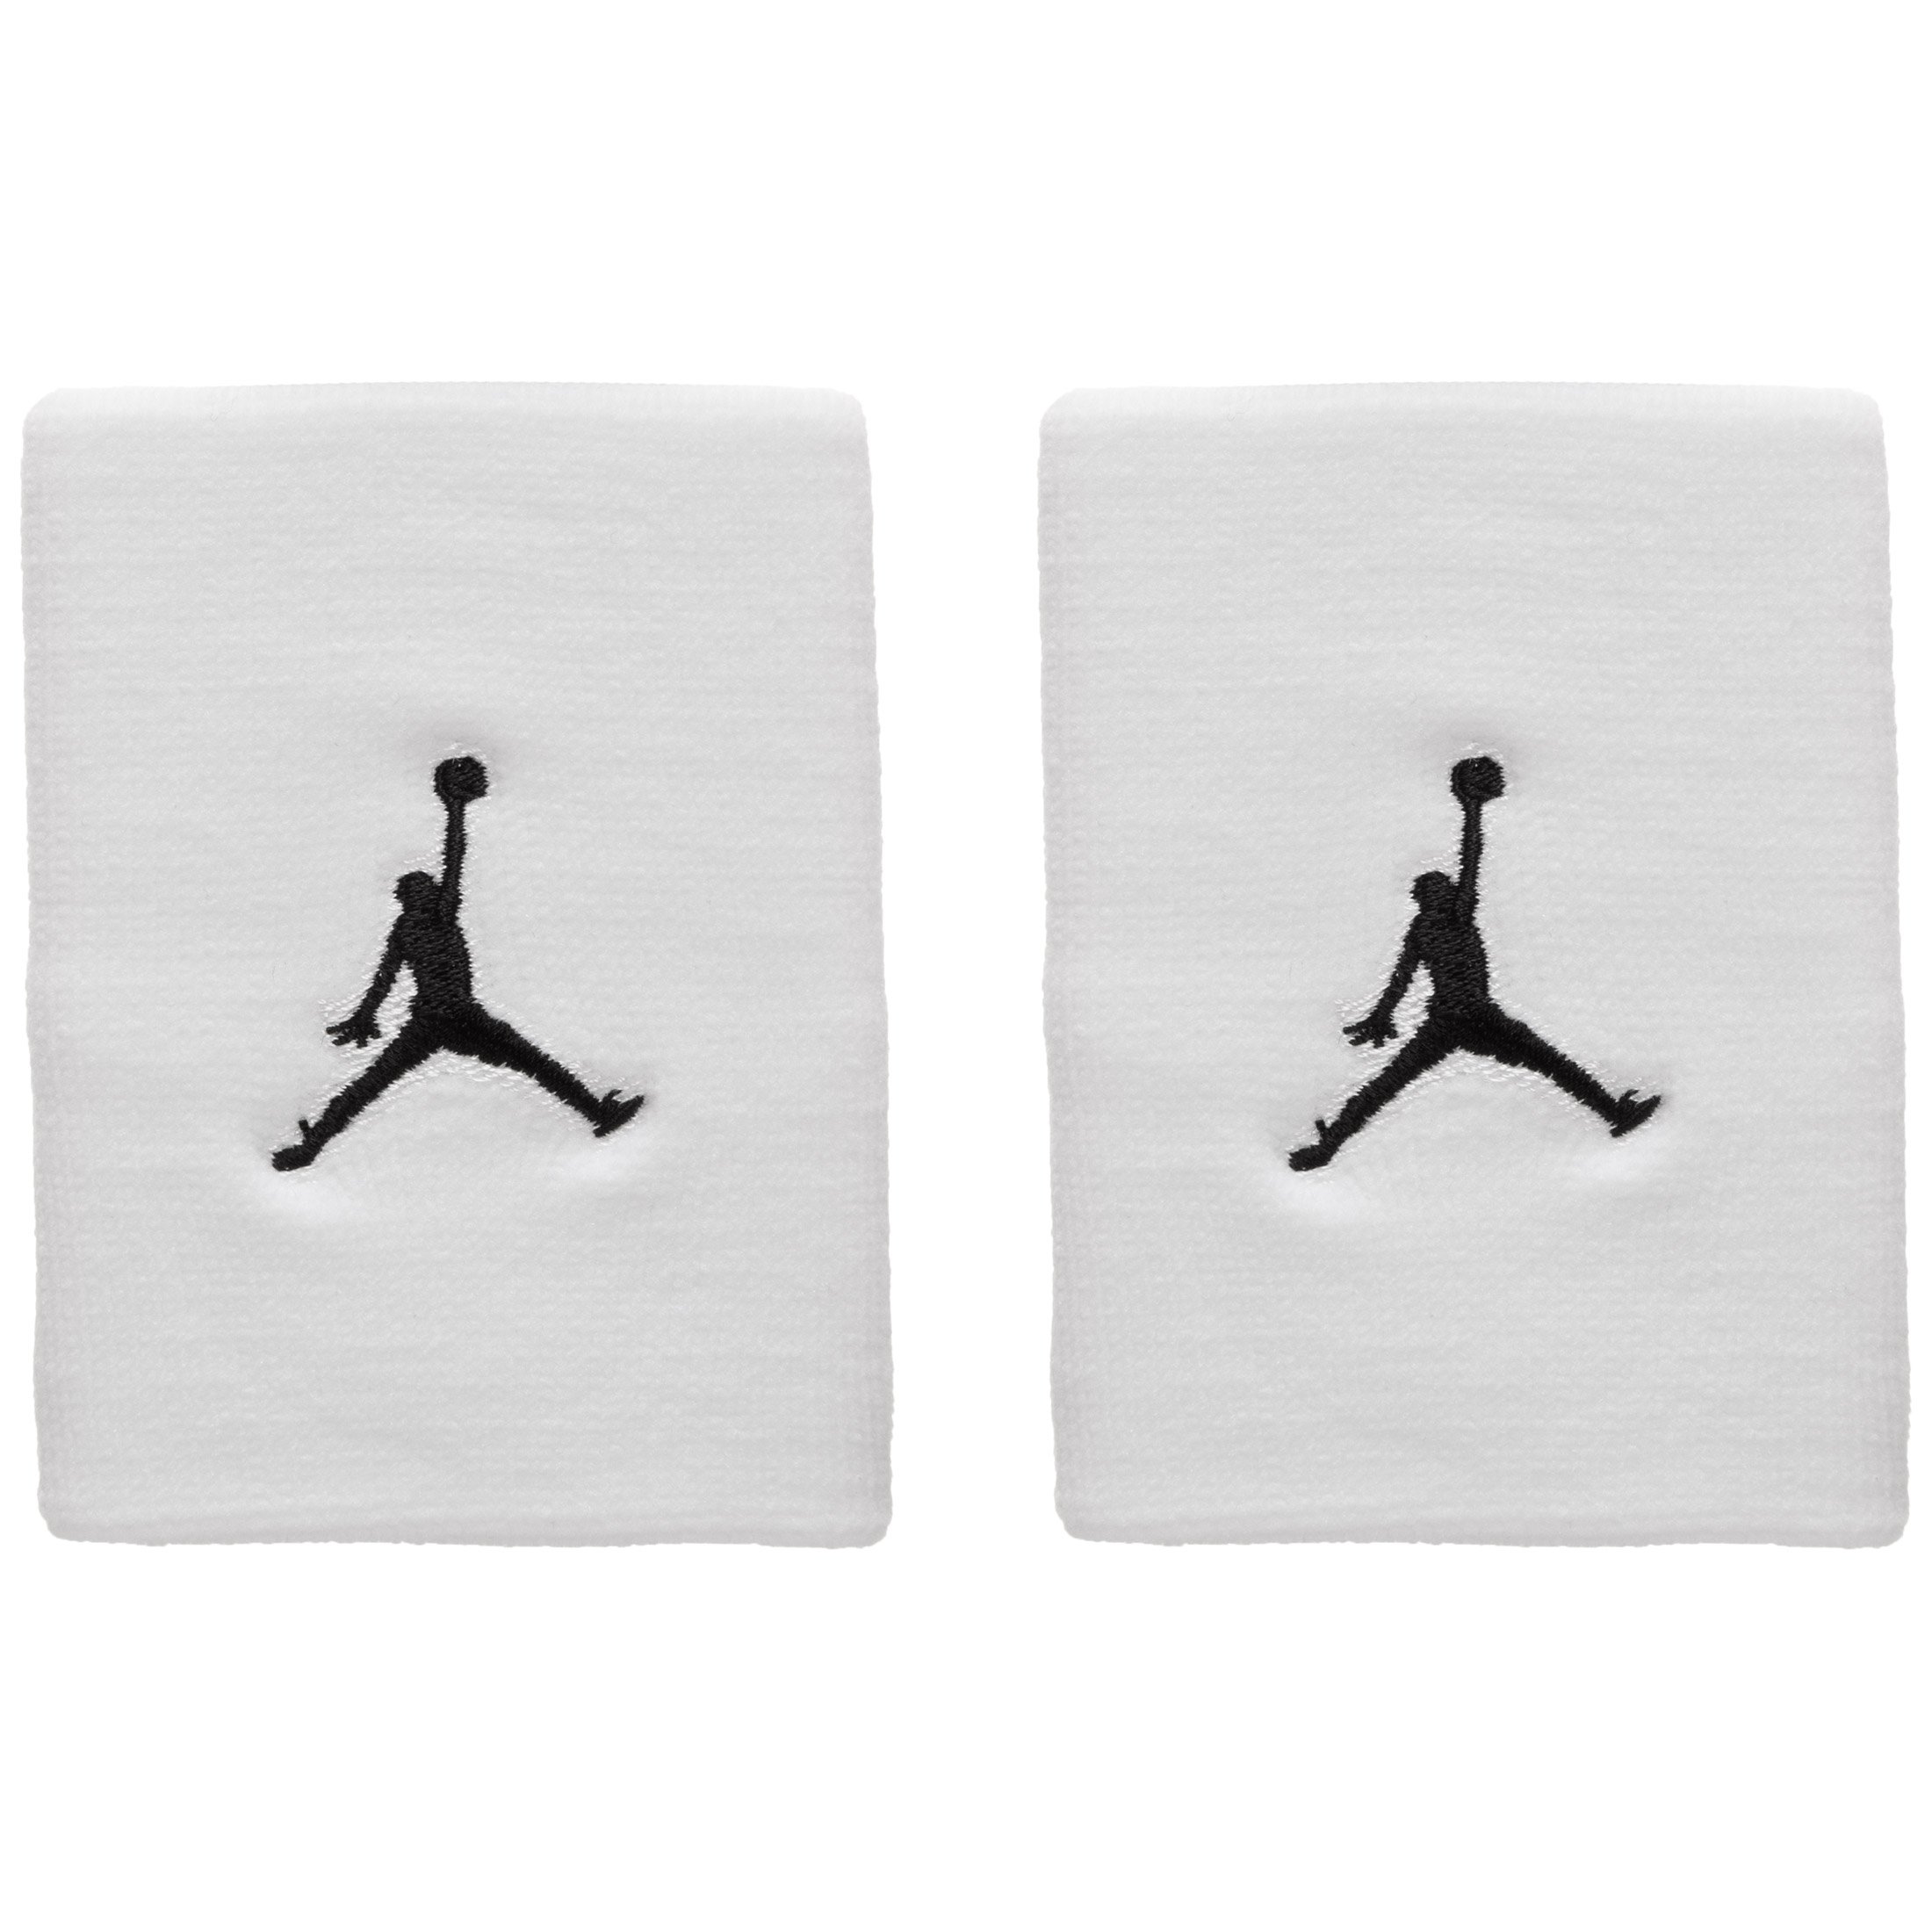 Jordan Jumpman Schweißband weiß / schwarz kaufen | Ballside